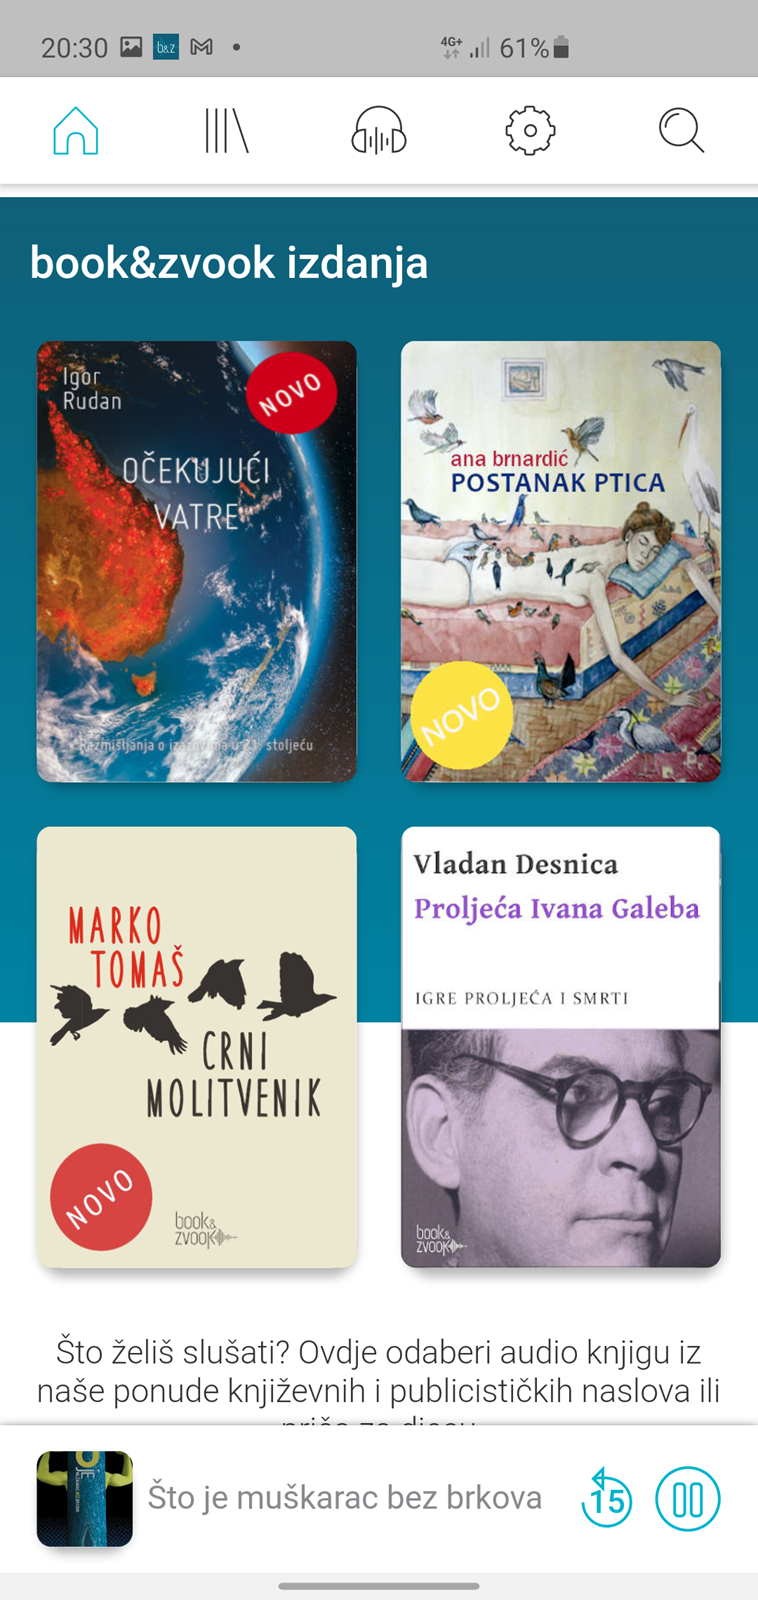 Book&Zvook - prva aplikacija za slušanje knjiga na hrvatskom jeziku - APP  DANA @ Bug.hr